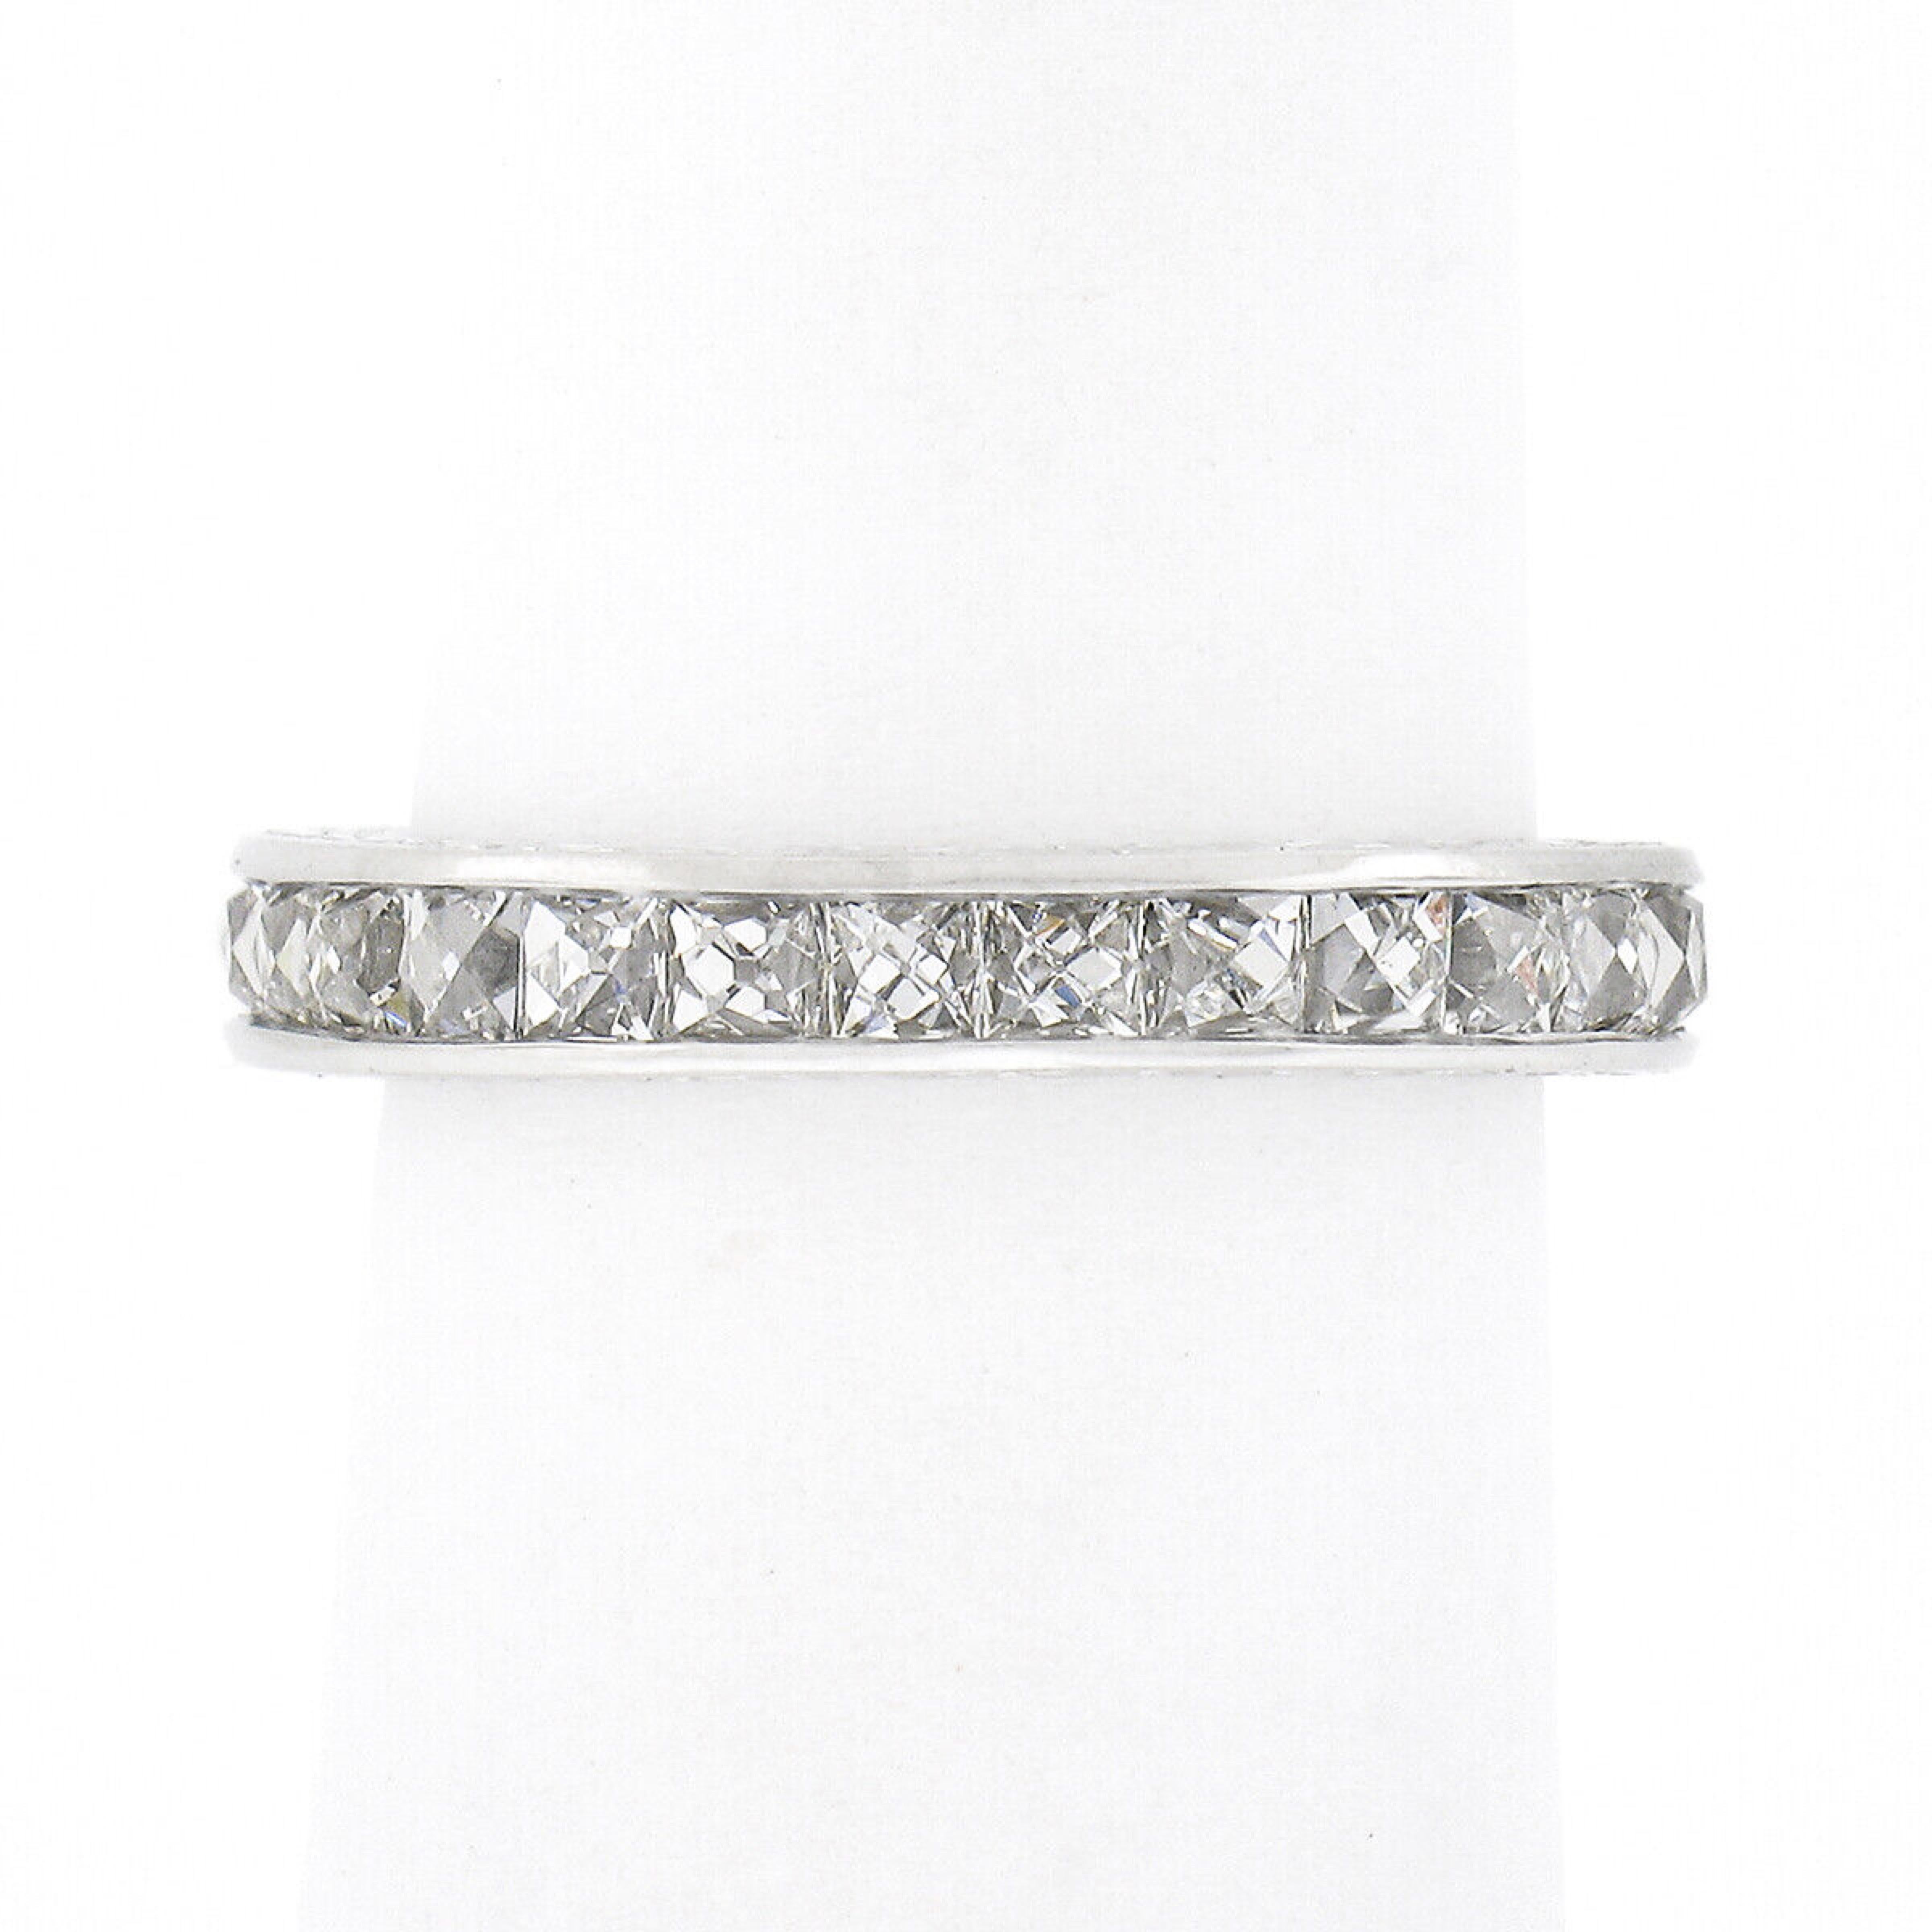 Dieser wunderschöne Vintage-Diamantring für die Ewigkeit wurde aus massivem Platin gefertigt und verfügt über 27 quadratische Diamanten im französischen Schliff, die über die gesamte Länge des Rings verteilt sind. Diese atemberaubenden und sehr